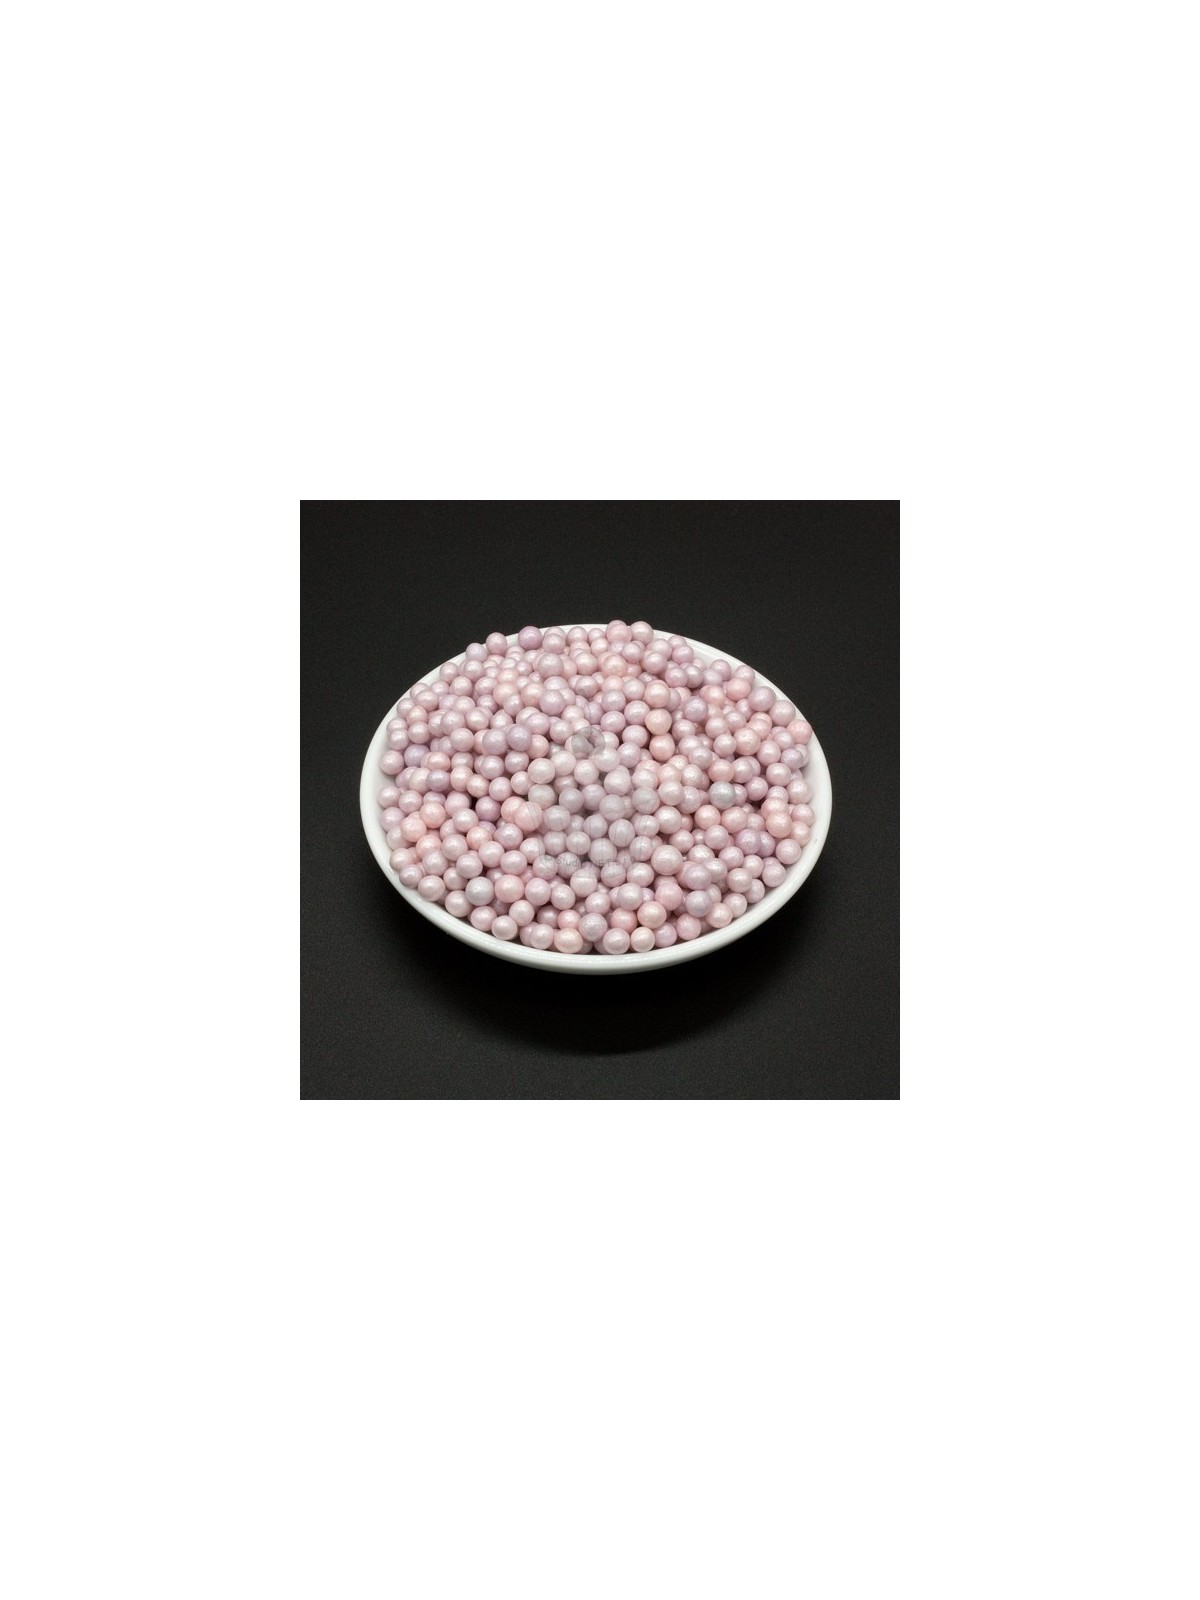 Sugar pearls 4mm - violet pearl - 100g